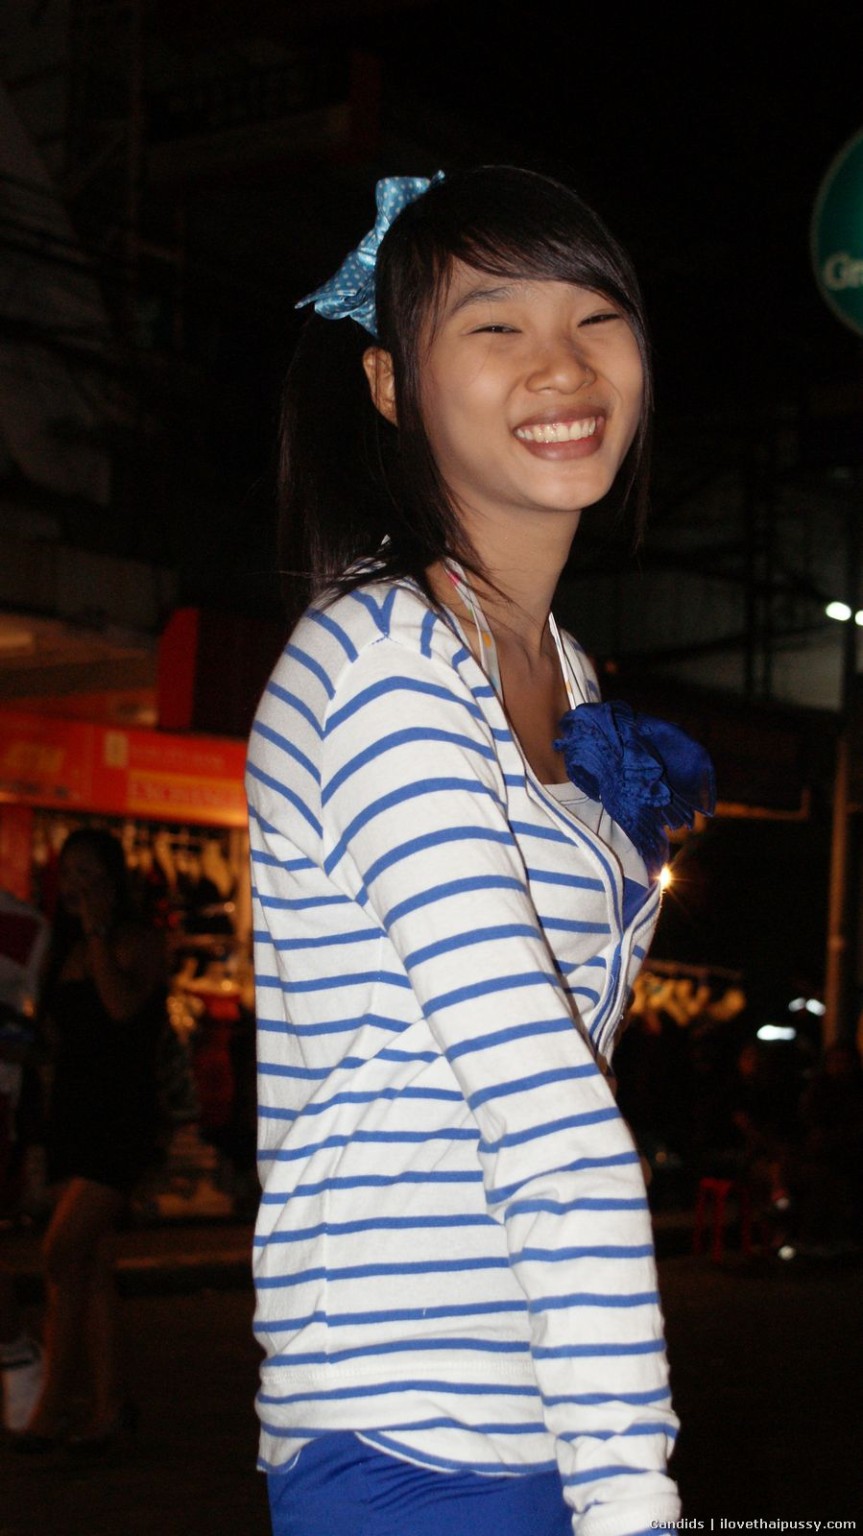 タイの売春婦が素手でドギー・スタイルで顔を下に向けてケツを上げている。
 #67671686